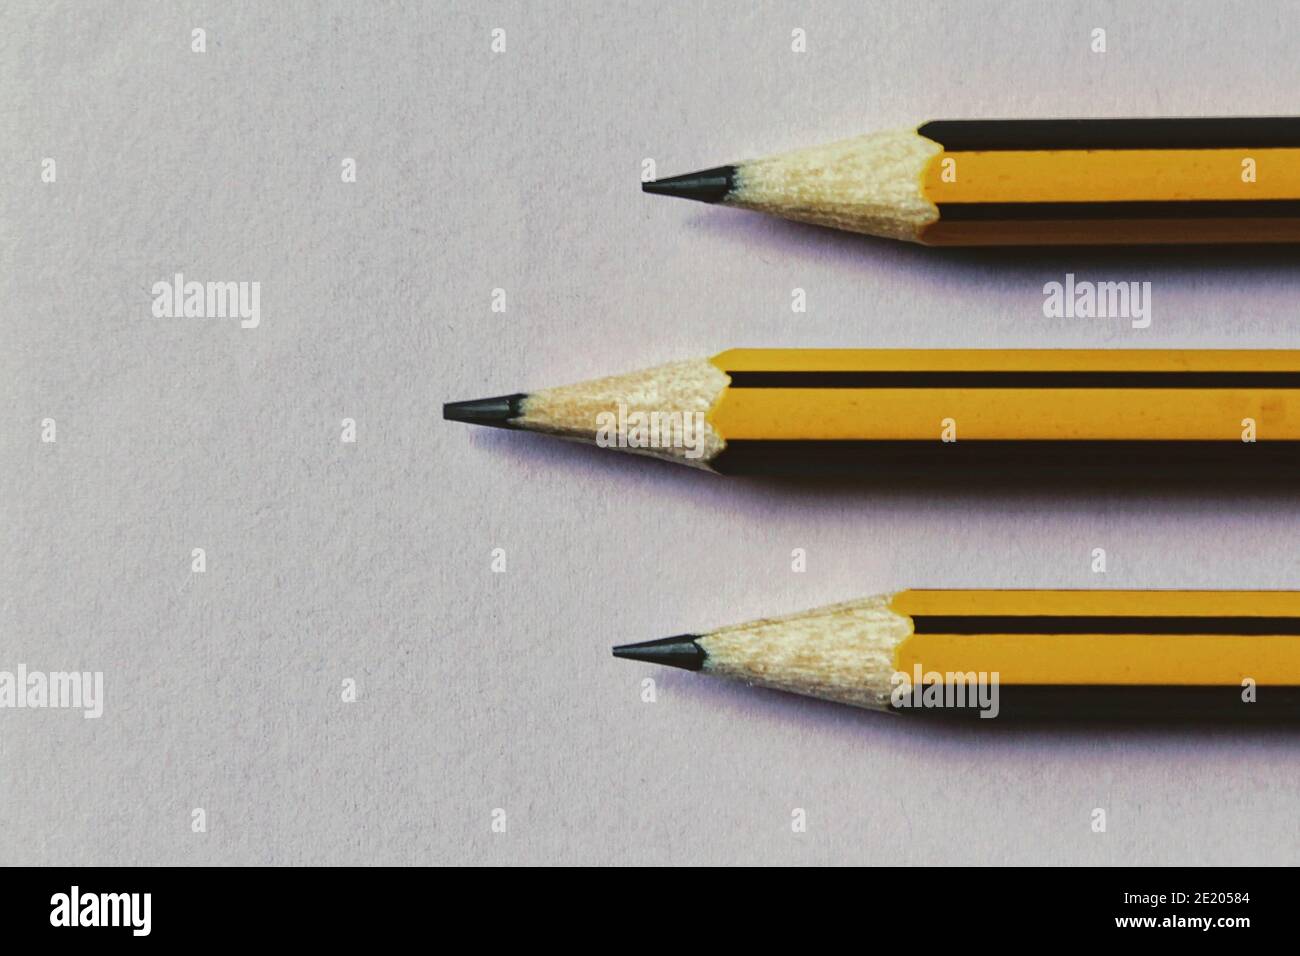 Hb pencils immagini e fotografie stock ad alta risoluzione - Alamy